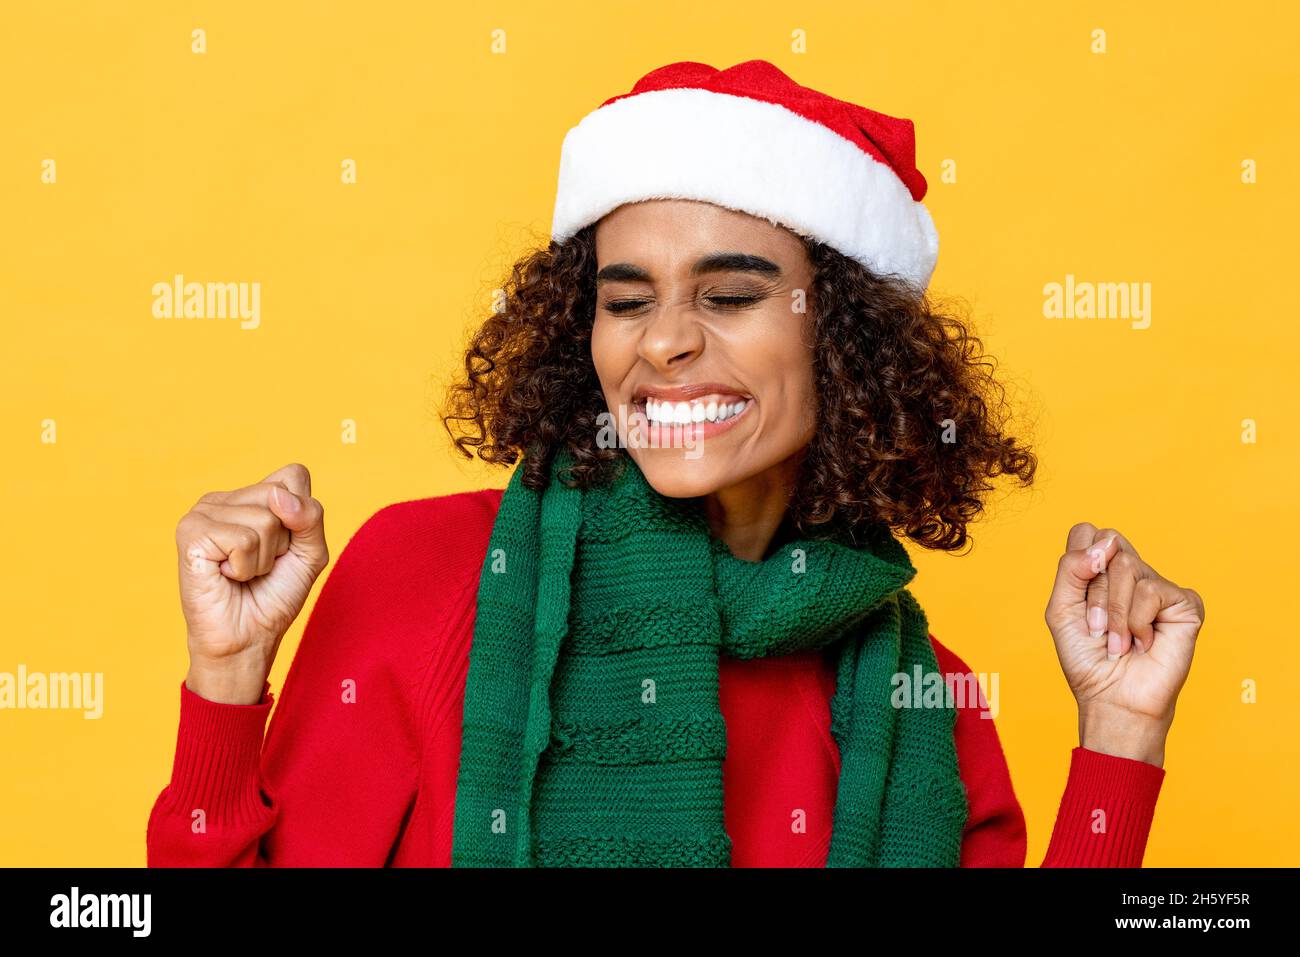 Aufgeregte Frau in Weihnachtskleidung lächelt und knallt die Hände auf einem isolierten bunten gelben Hintergrund Stockfoto